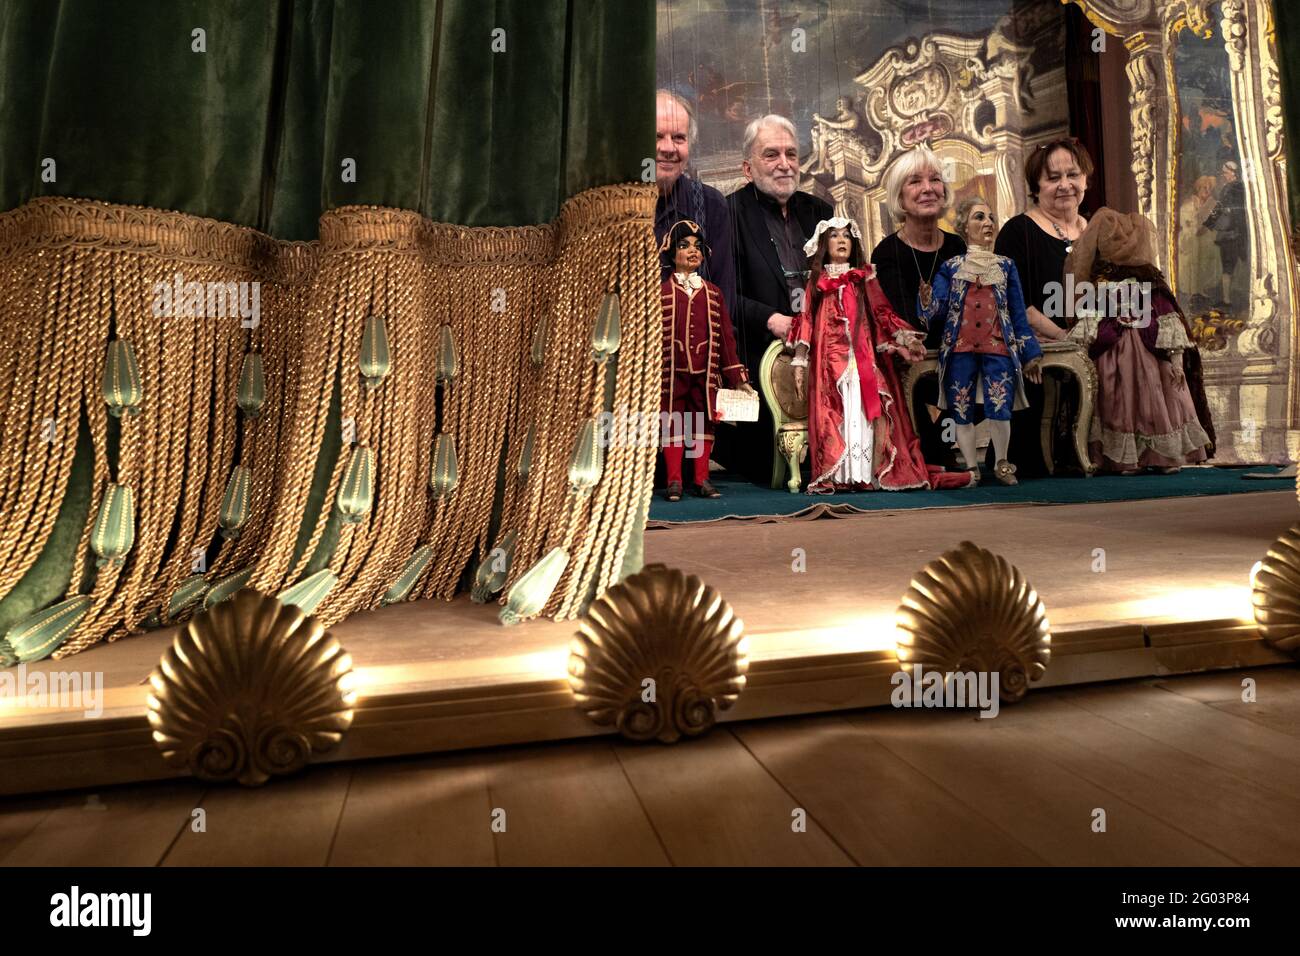 Marionnettistes et acteurs de la société Carlo Colla, derrière le rideau à la fin du spectacle au théâtre historique de Gerolamo, à Milan. Banque D'Images